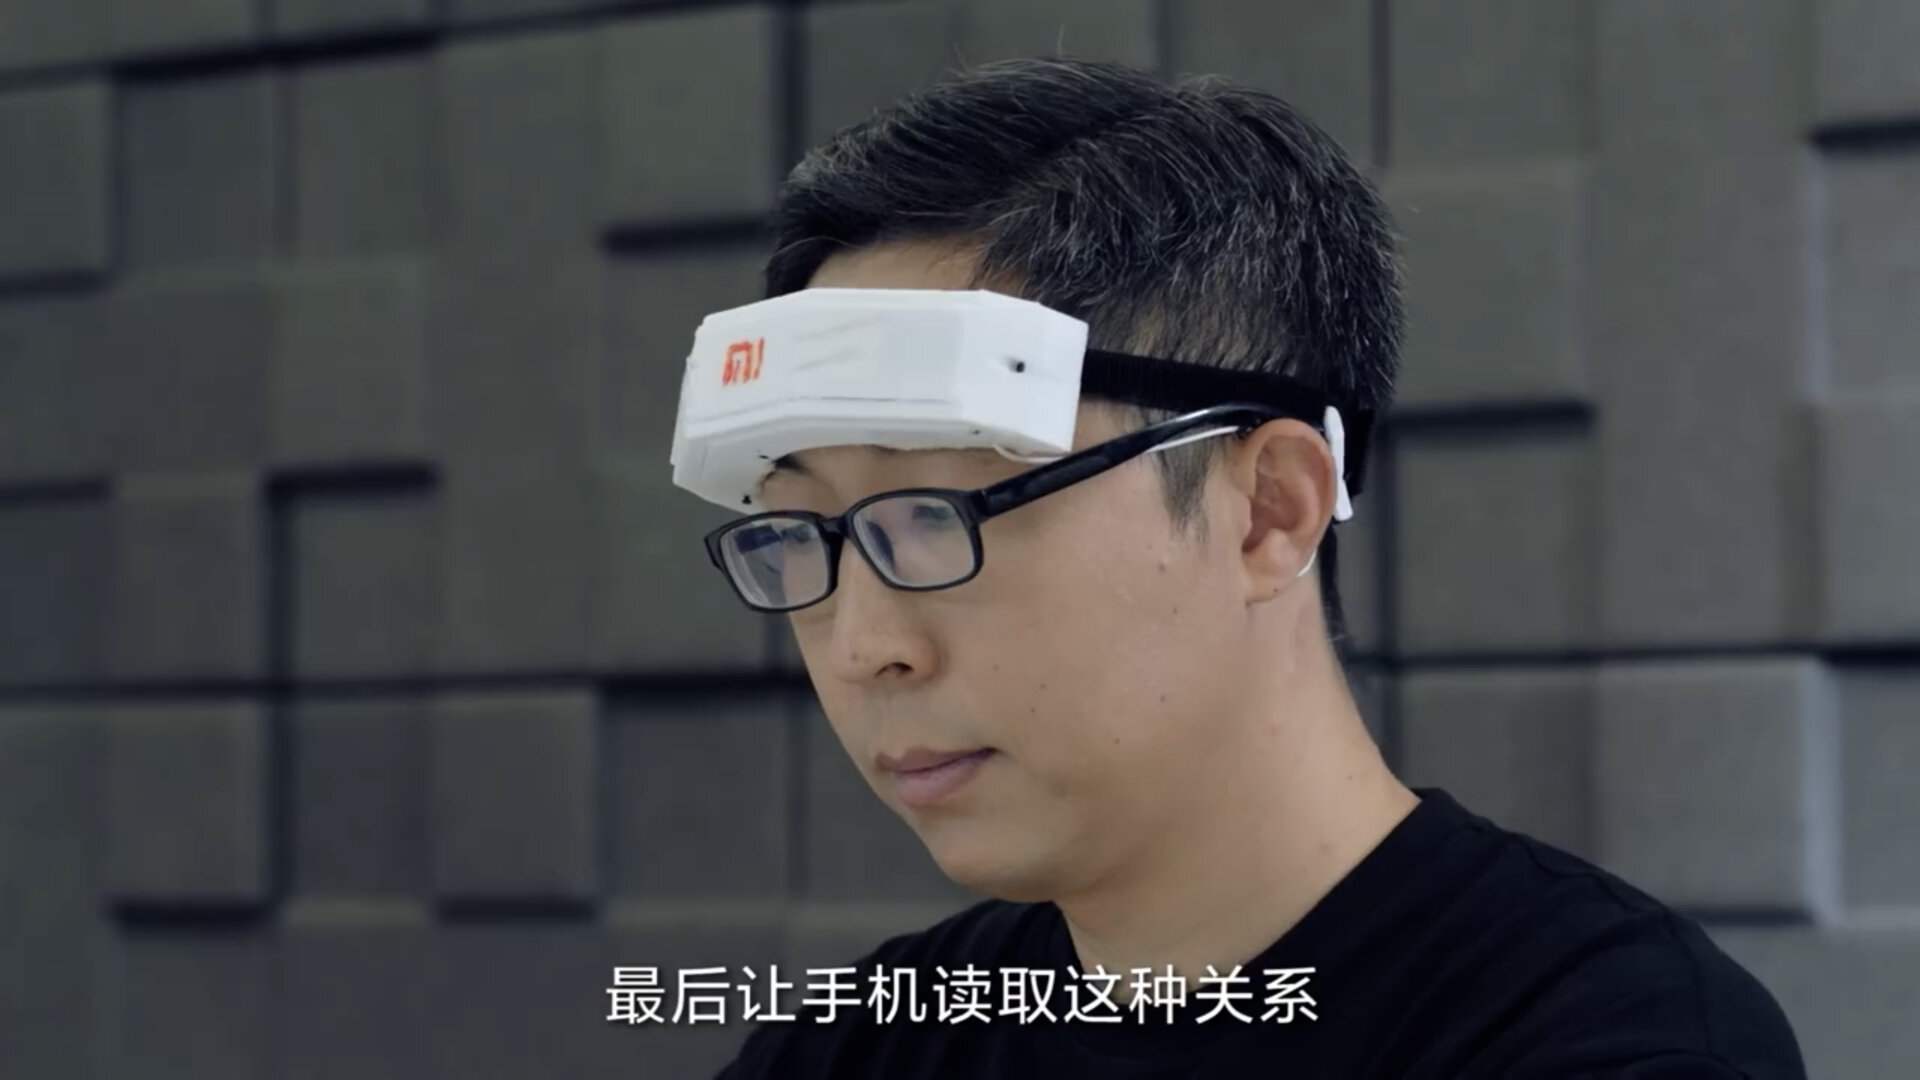 Xiaomi представила корону для управления гаджетами силой мысли. Не кликбейт